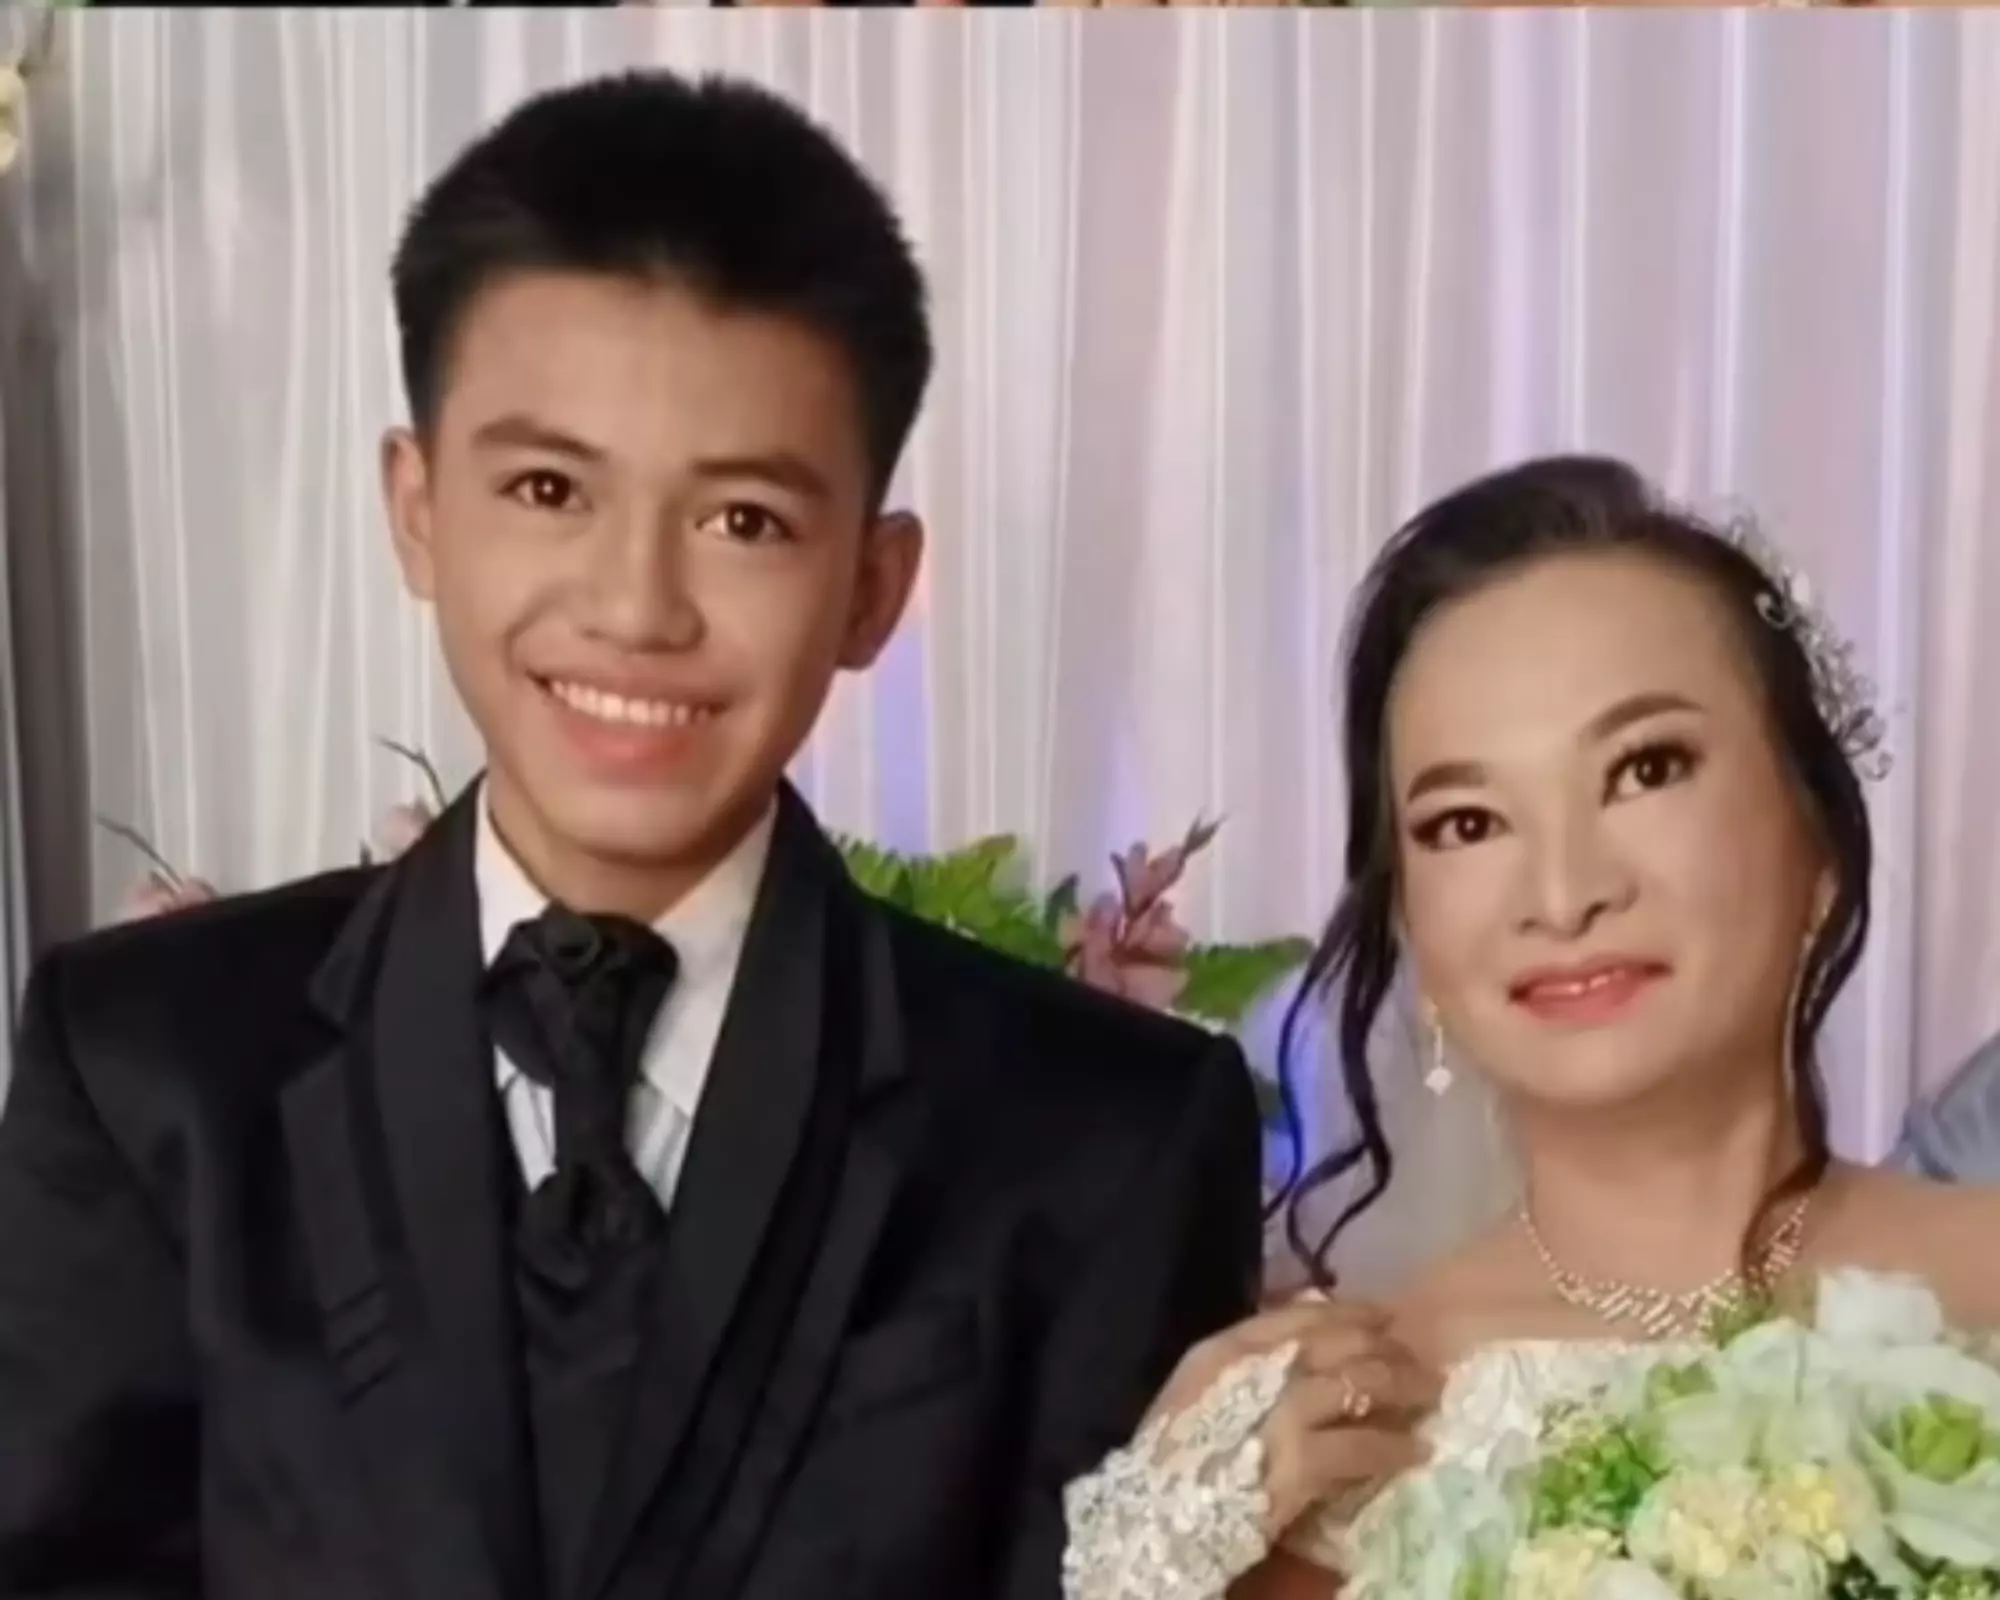 Heboh! Remaja 16 Tahun Menikah dengan Wanita 41 Tahun yang Juga Teman Ibunya